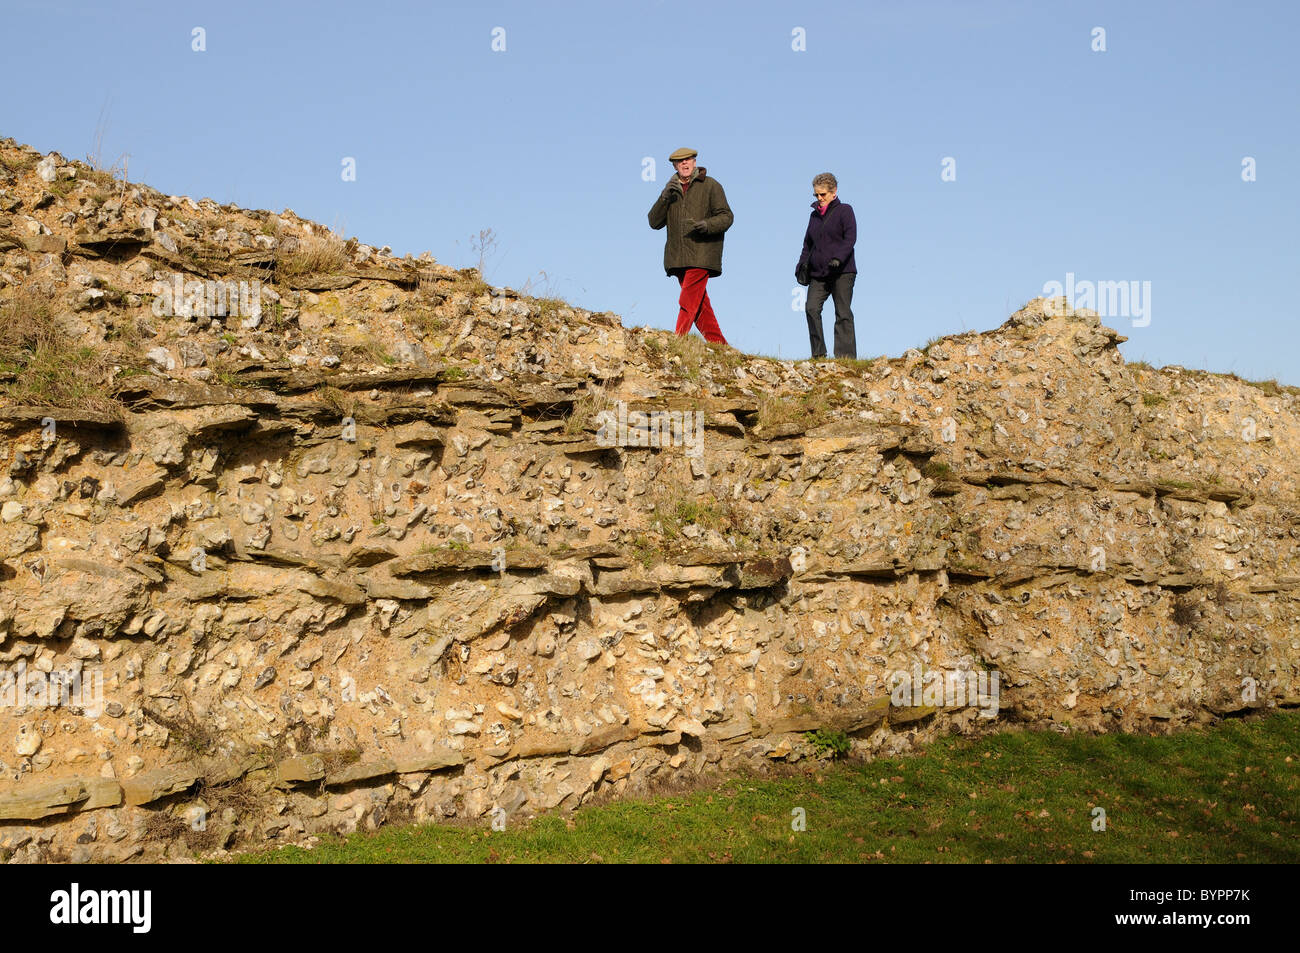 Murs romains au sud de l'Angleterre dans le Hampshire Silchester Visiteurs marchant le long de l'ancien mur Banque D'Images